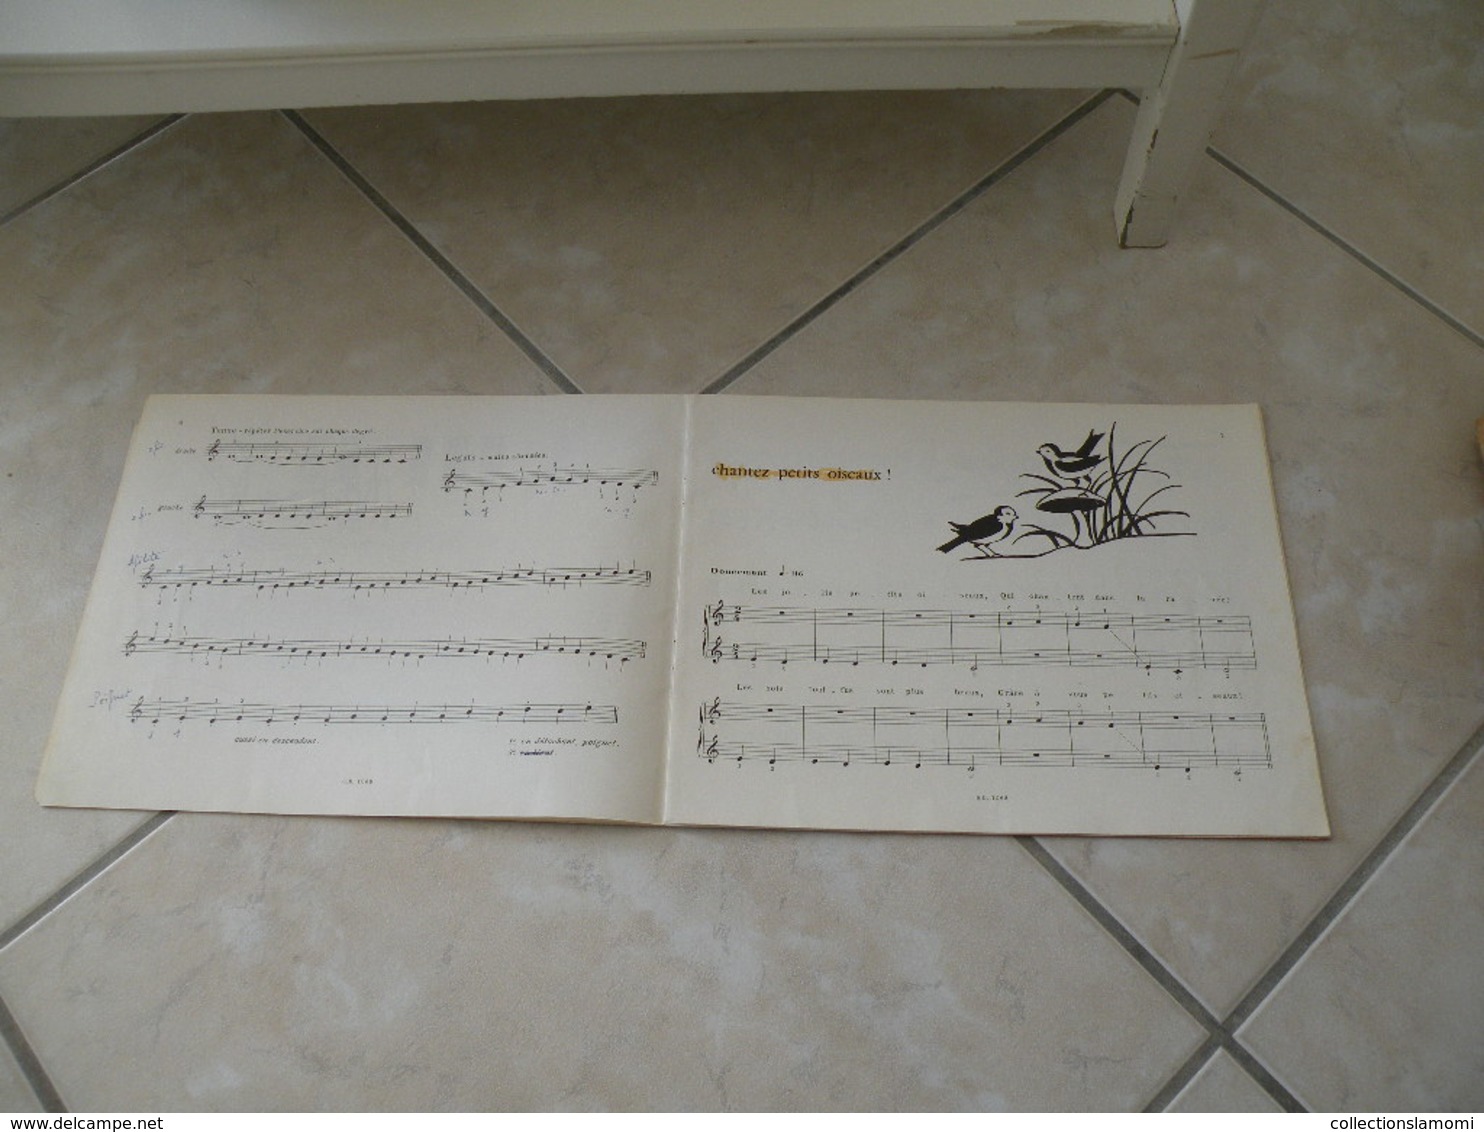 L'Enfant au clavier, méthode de piano illustrée - Musique (1)